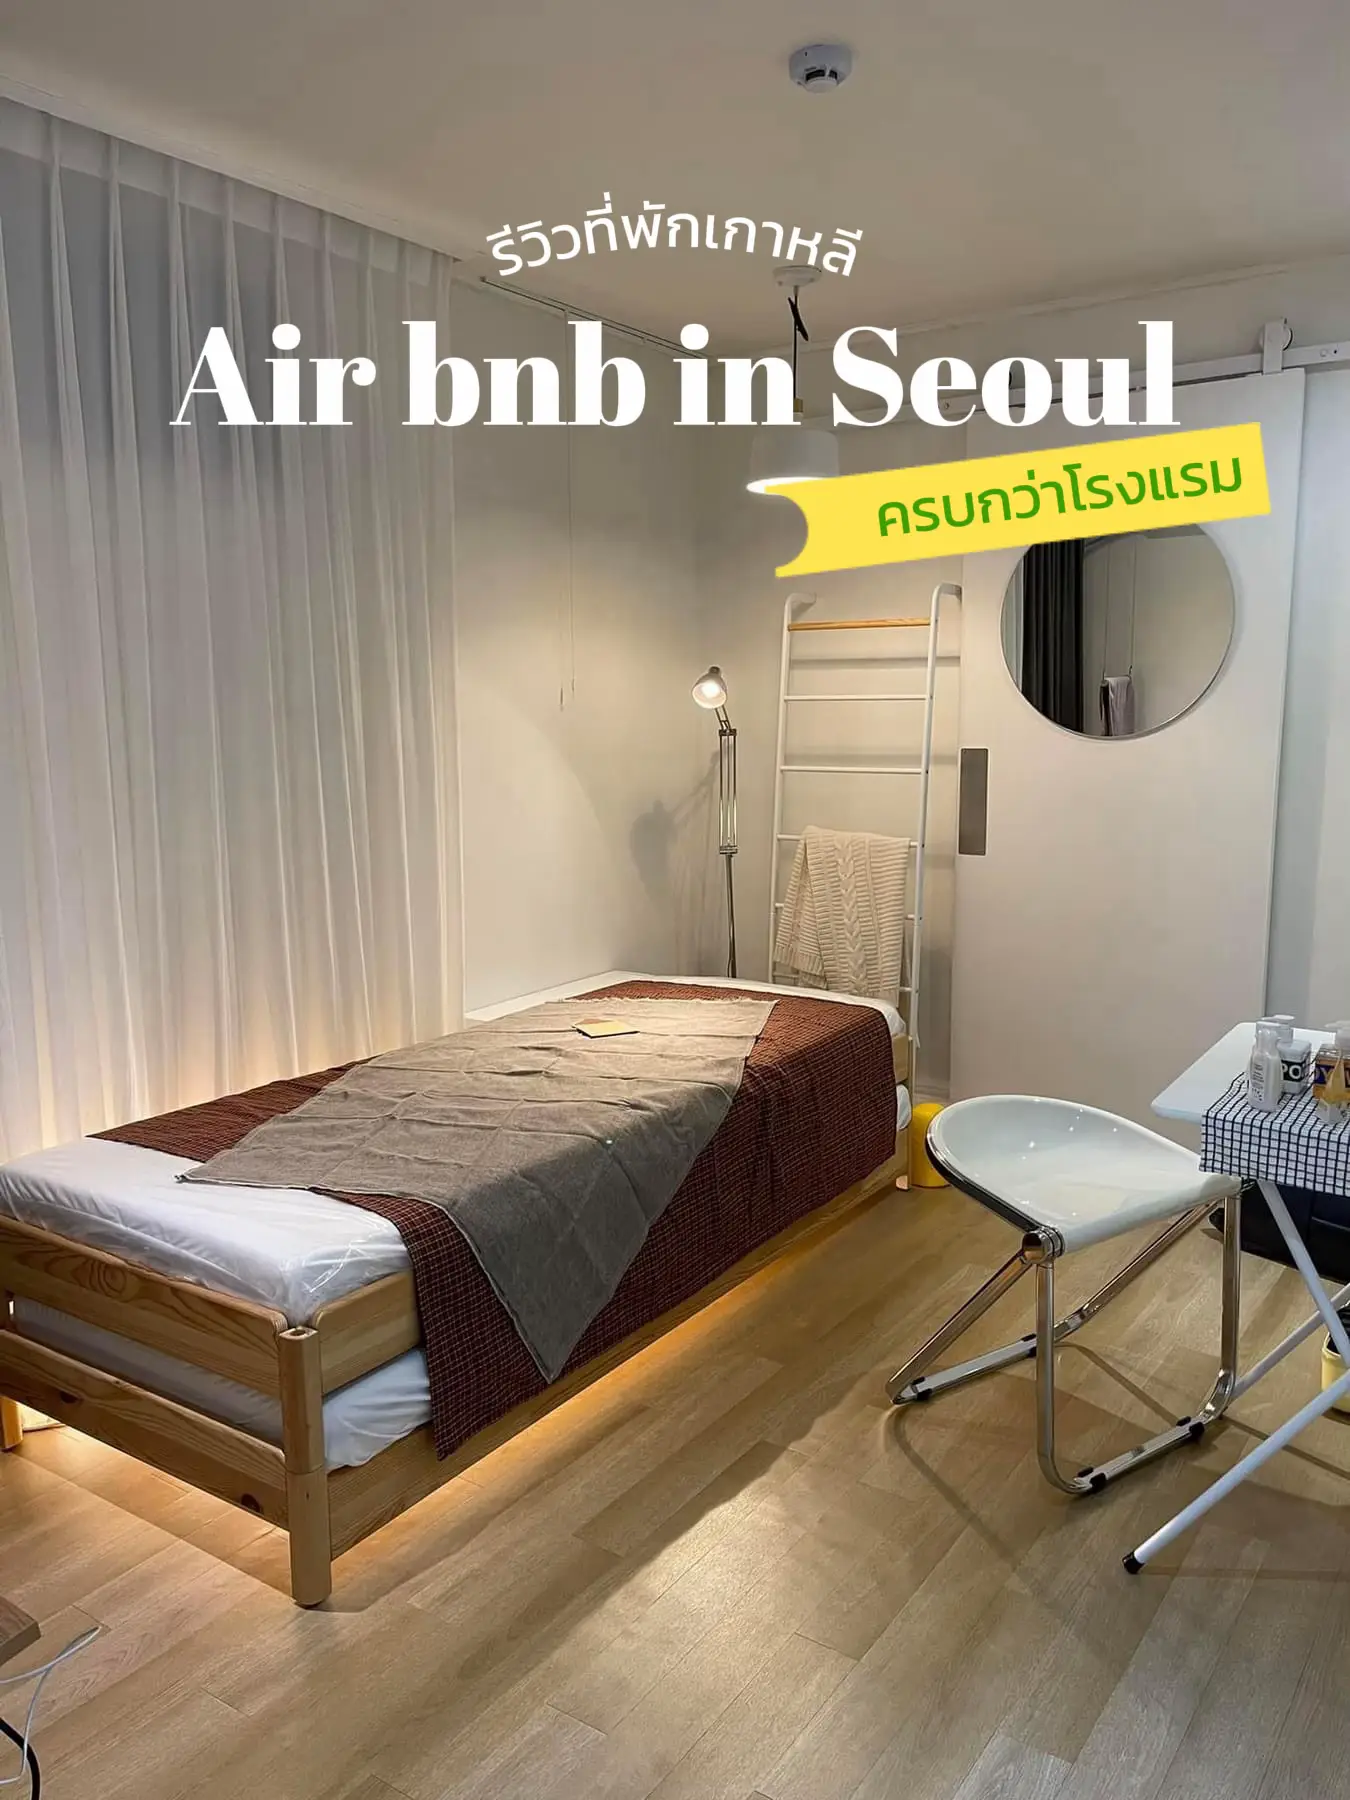 Organized Kitchens - Airbnb Korea